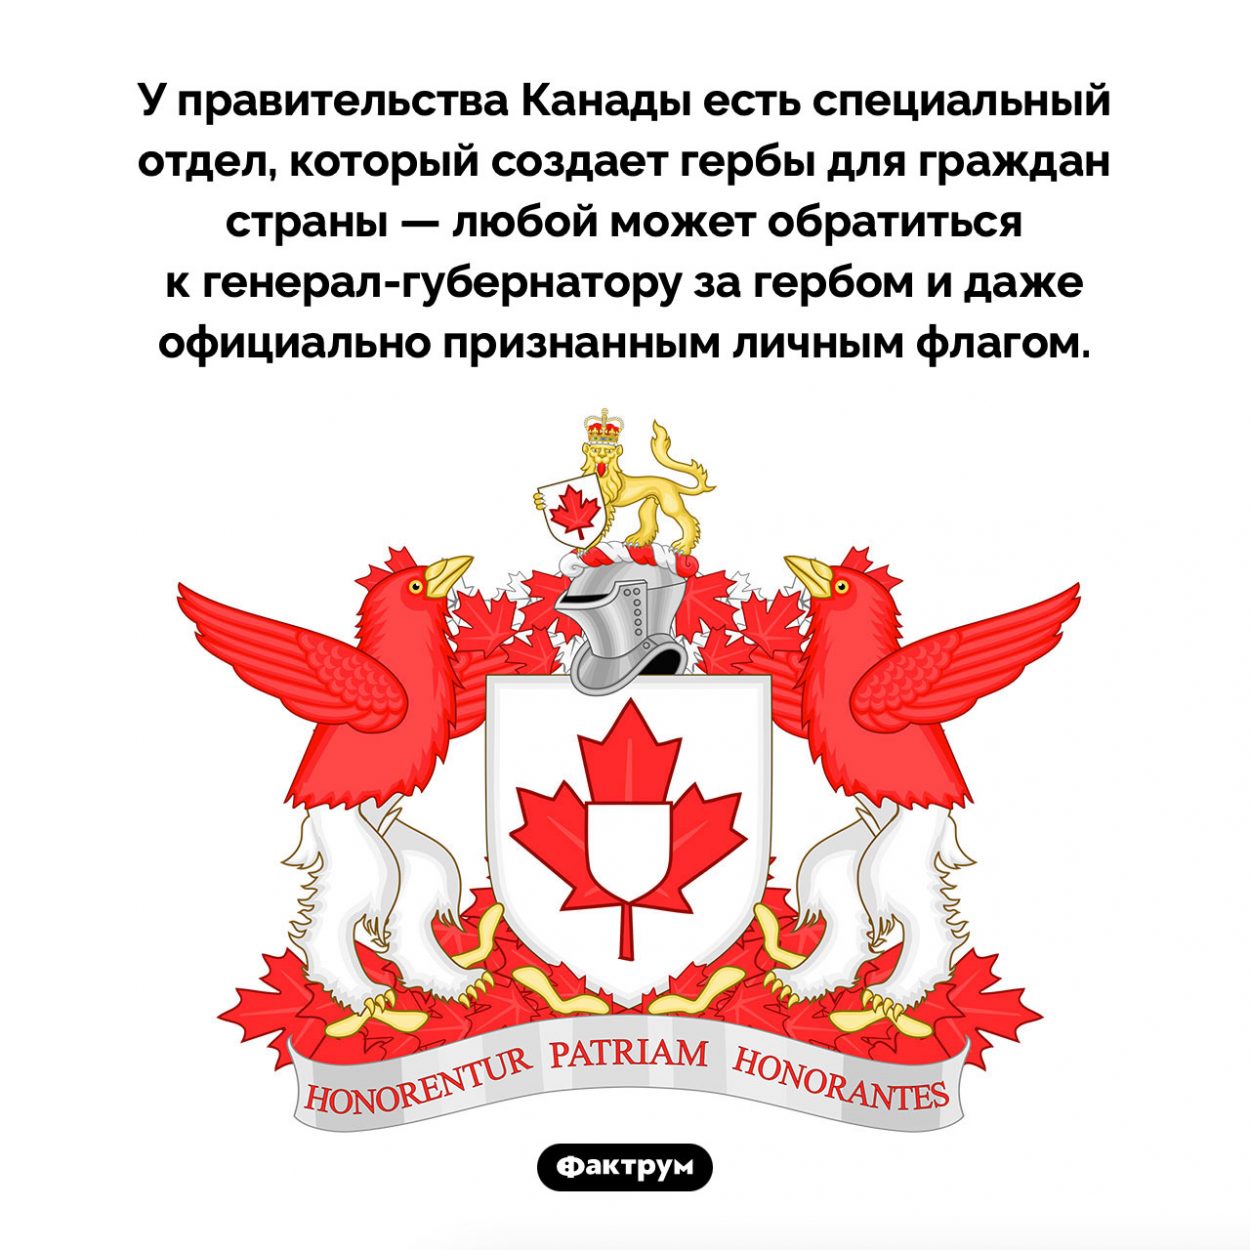 В Канаде у каждого может быть свой герб и флаг. У правительства Канады есть специальный отдел, который создает гербы для граждан страны — любой может обратиться к генерал-губернатору за гербом и даже официально признанным личным флагом.